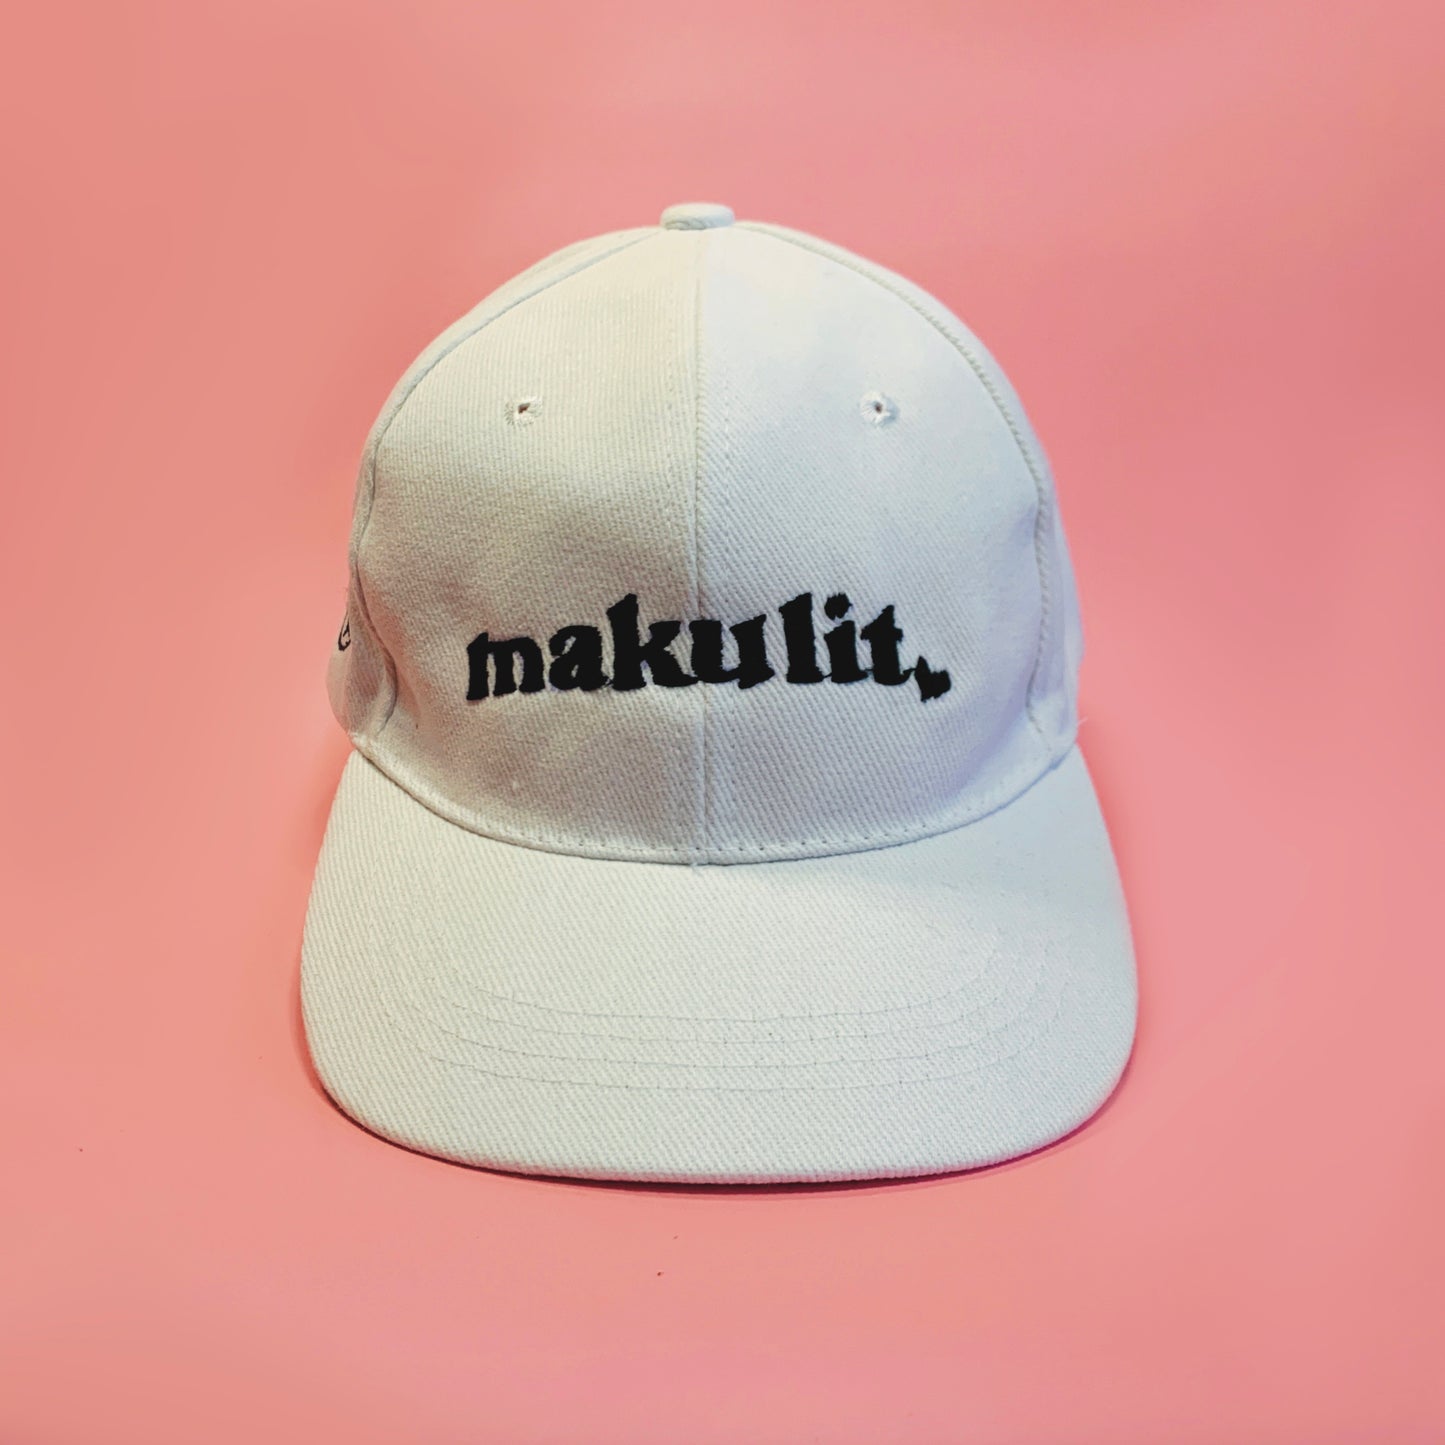 Makulit Love Cap in Black, White, Brown